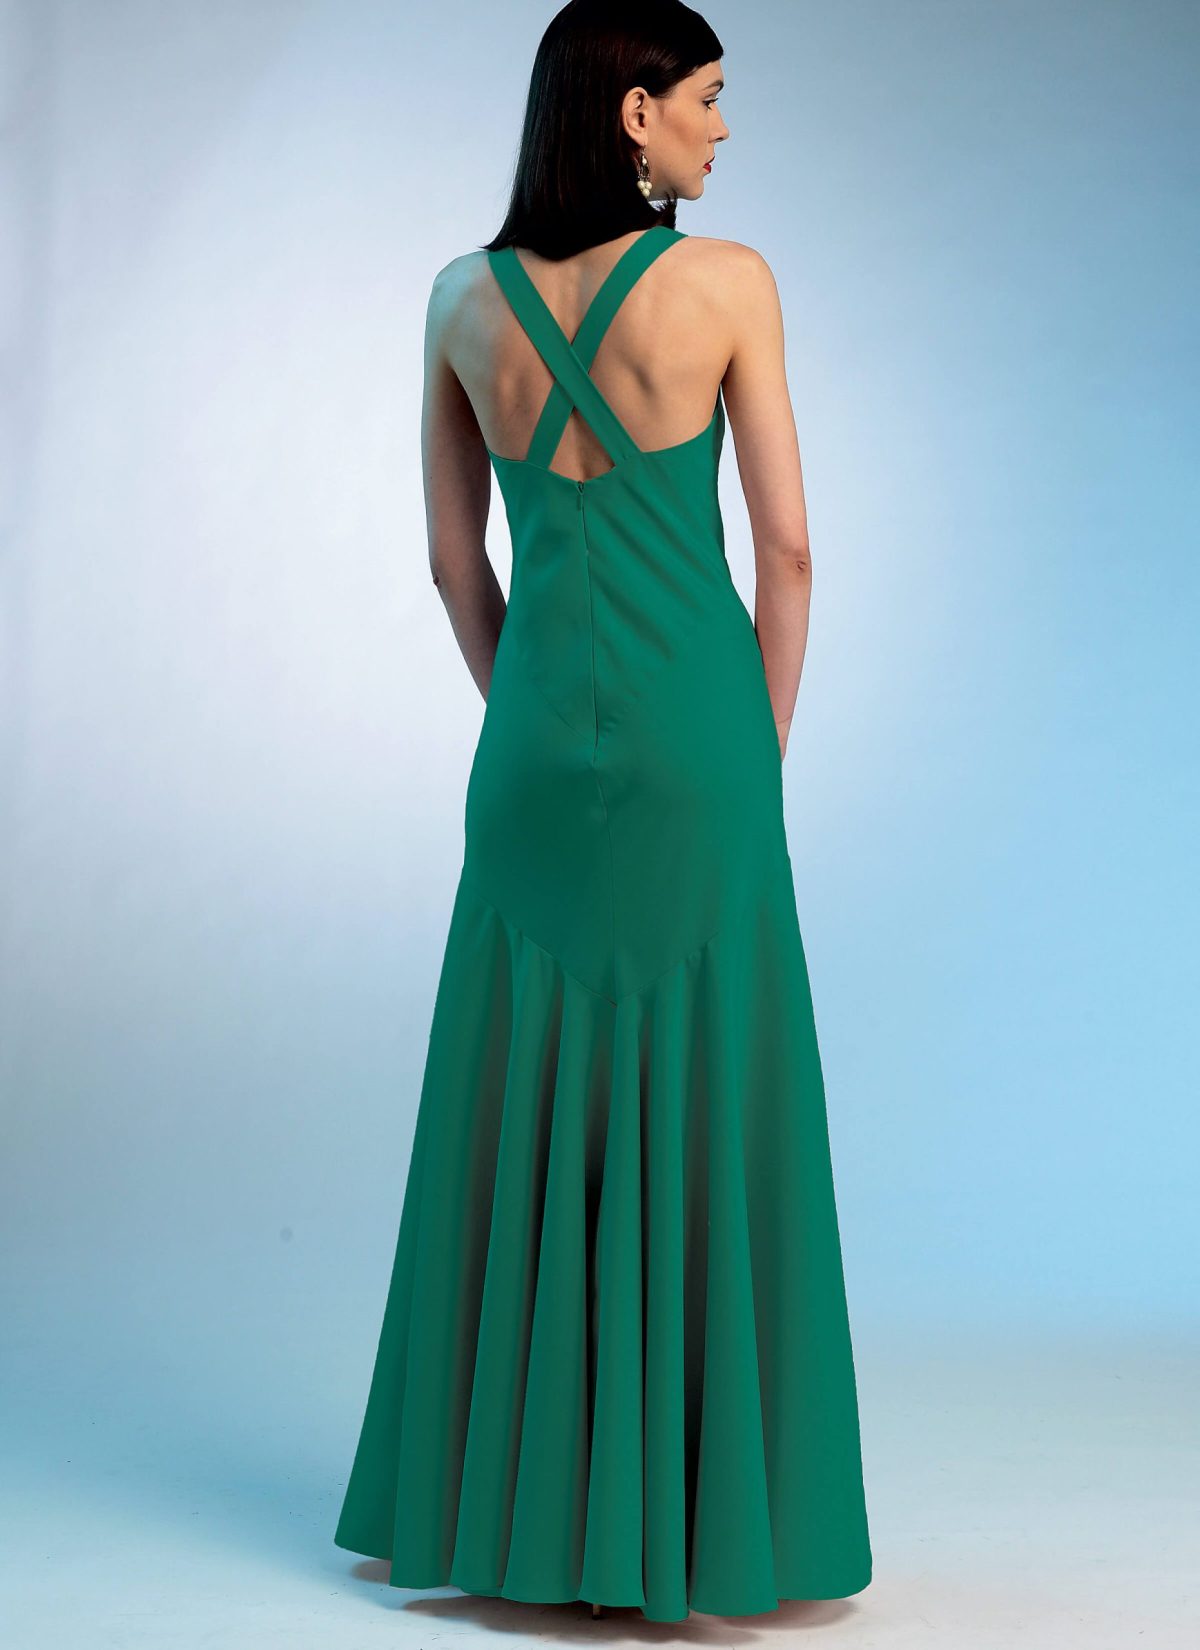 Vogue Patterns V8814 Misses' Dress